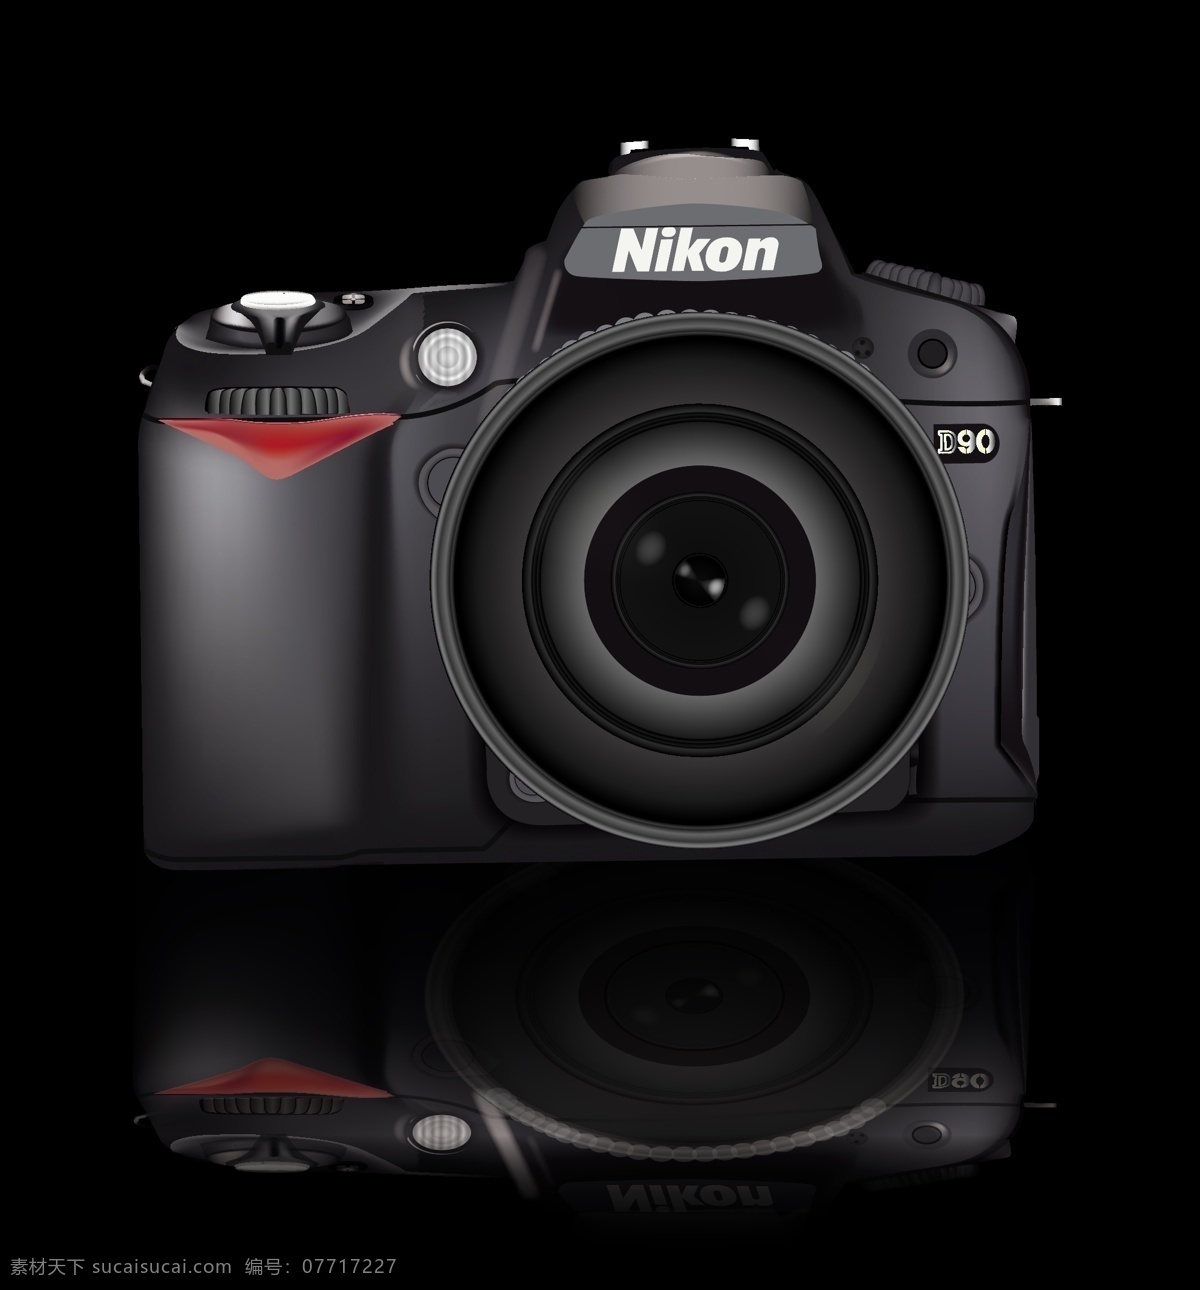 尼康 单反 d90 尼康相机 尼康d90 单反相机 相机 矢量素材 黑色